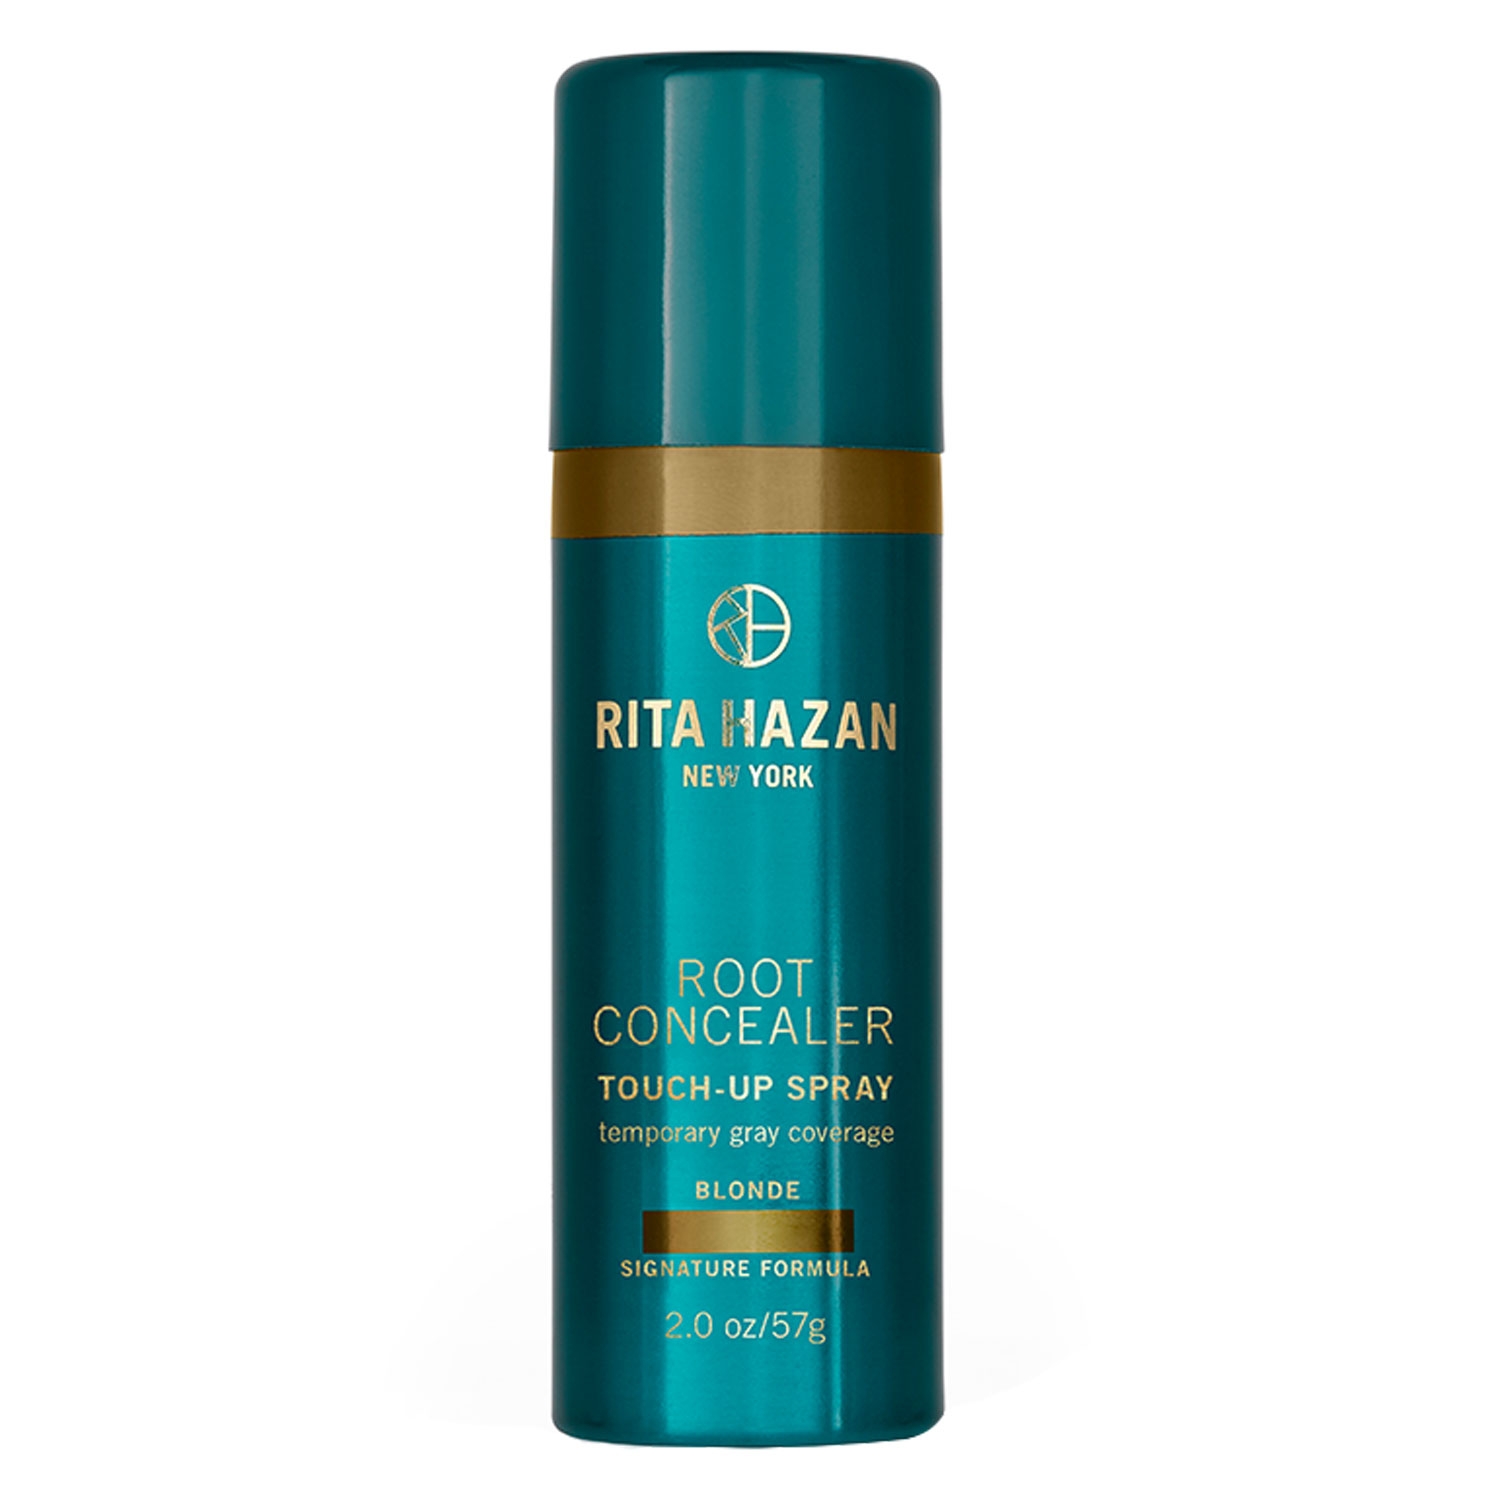 Produktbild von Rita Hazan New York - Root Concealer Touch-Up Spray Blonde